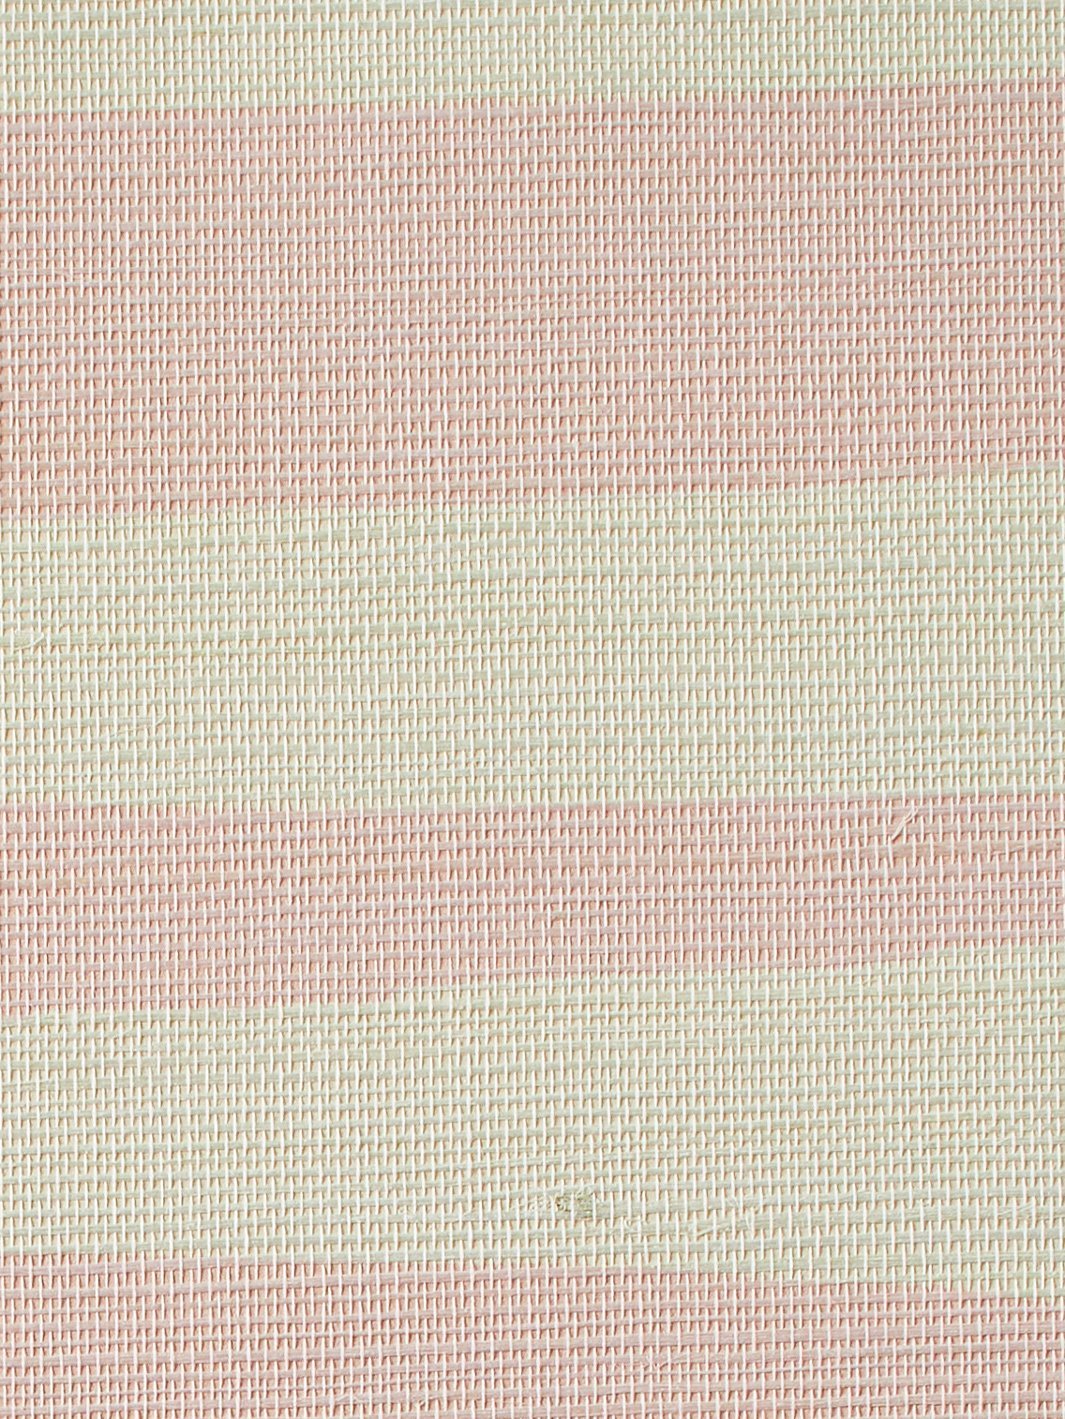 'Watercolor Weave Large' Grasscloth' Wallpaper by Wallshoppe - Ballet Slipper